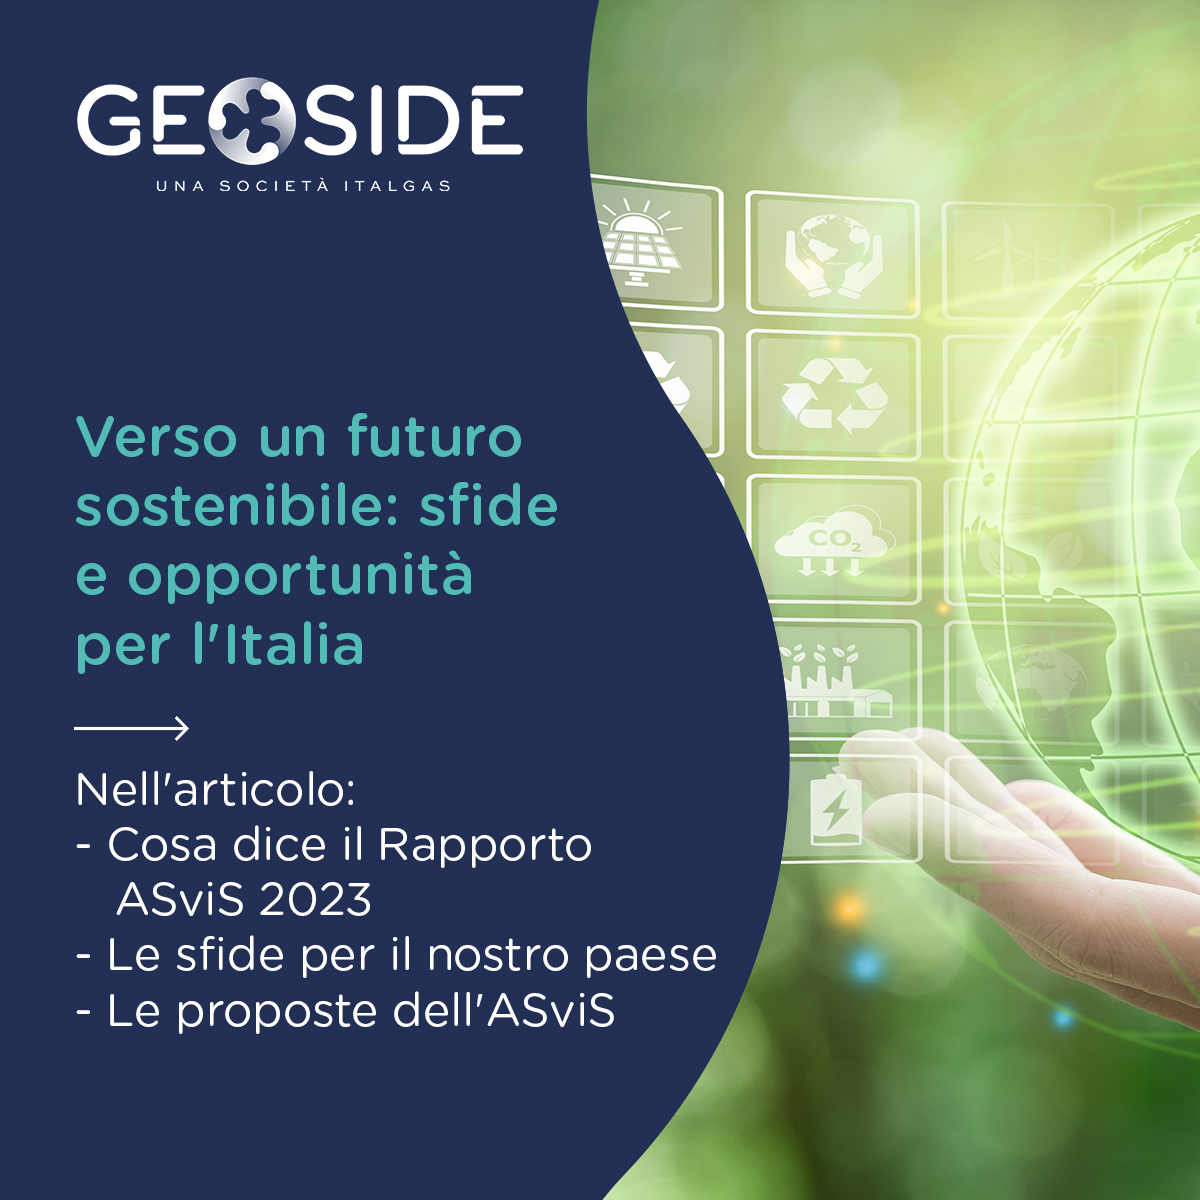 ♻️Il Rapporto @ASviSItalia 2023 è chiaro: l'Italia deve accelerare il percorso verso la #sostenibilità La transizione energetica è cruciale per ridurre le emissioni e bisogna agire ora! Leggi di più sul blog ⤵️ geoside.com/it/verso-un-fu… #Agenda2030